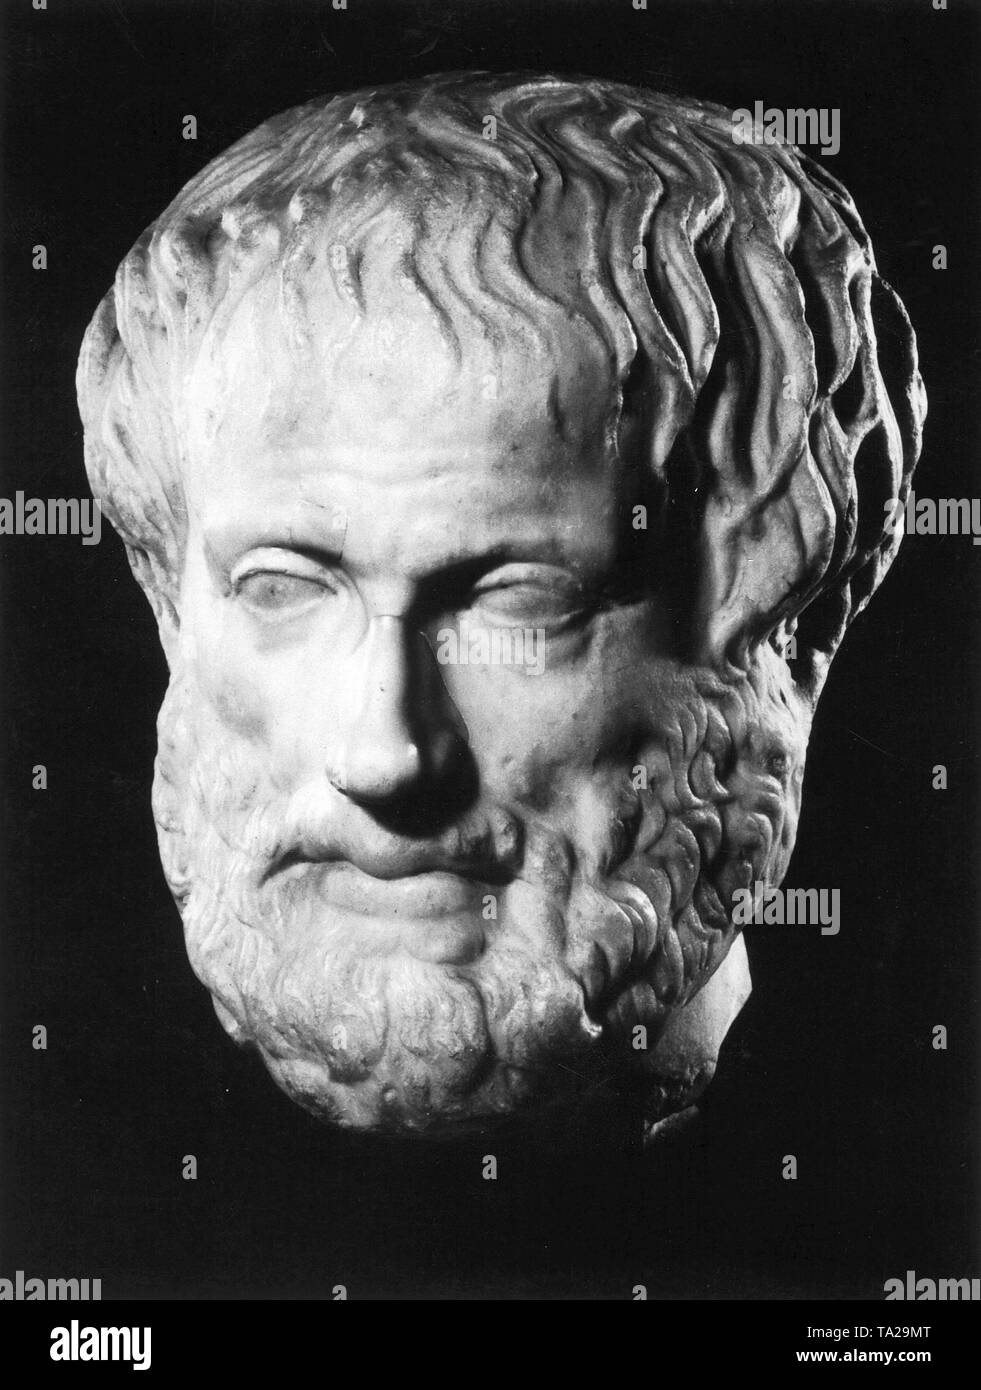 Ritratto in marmo del filosofo greco Aristotele. Questa copia romana di un originale greco è una cosiddetta doppia herm, sul retro di Aristotele la testa è il ritratto di un altro filosofo. Foto Stock